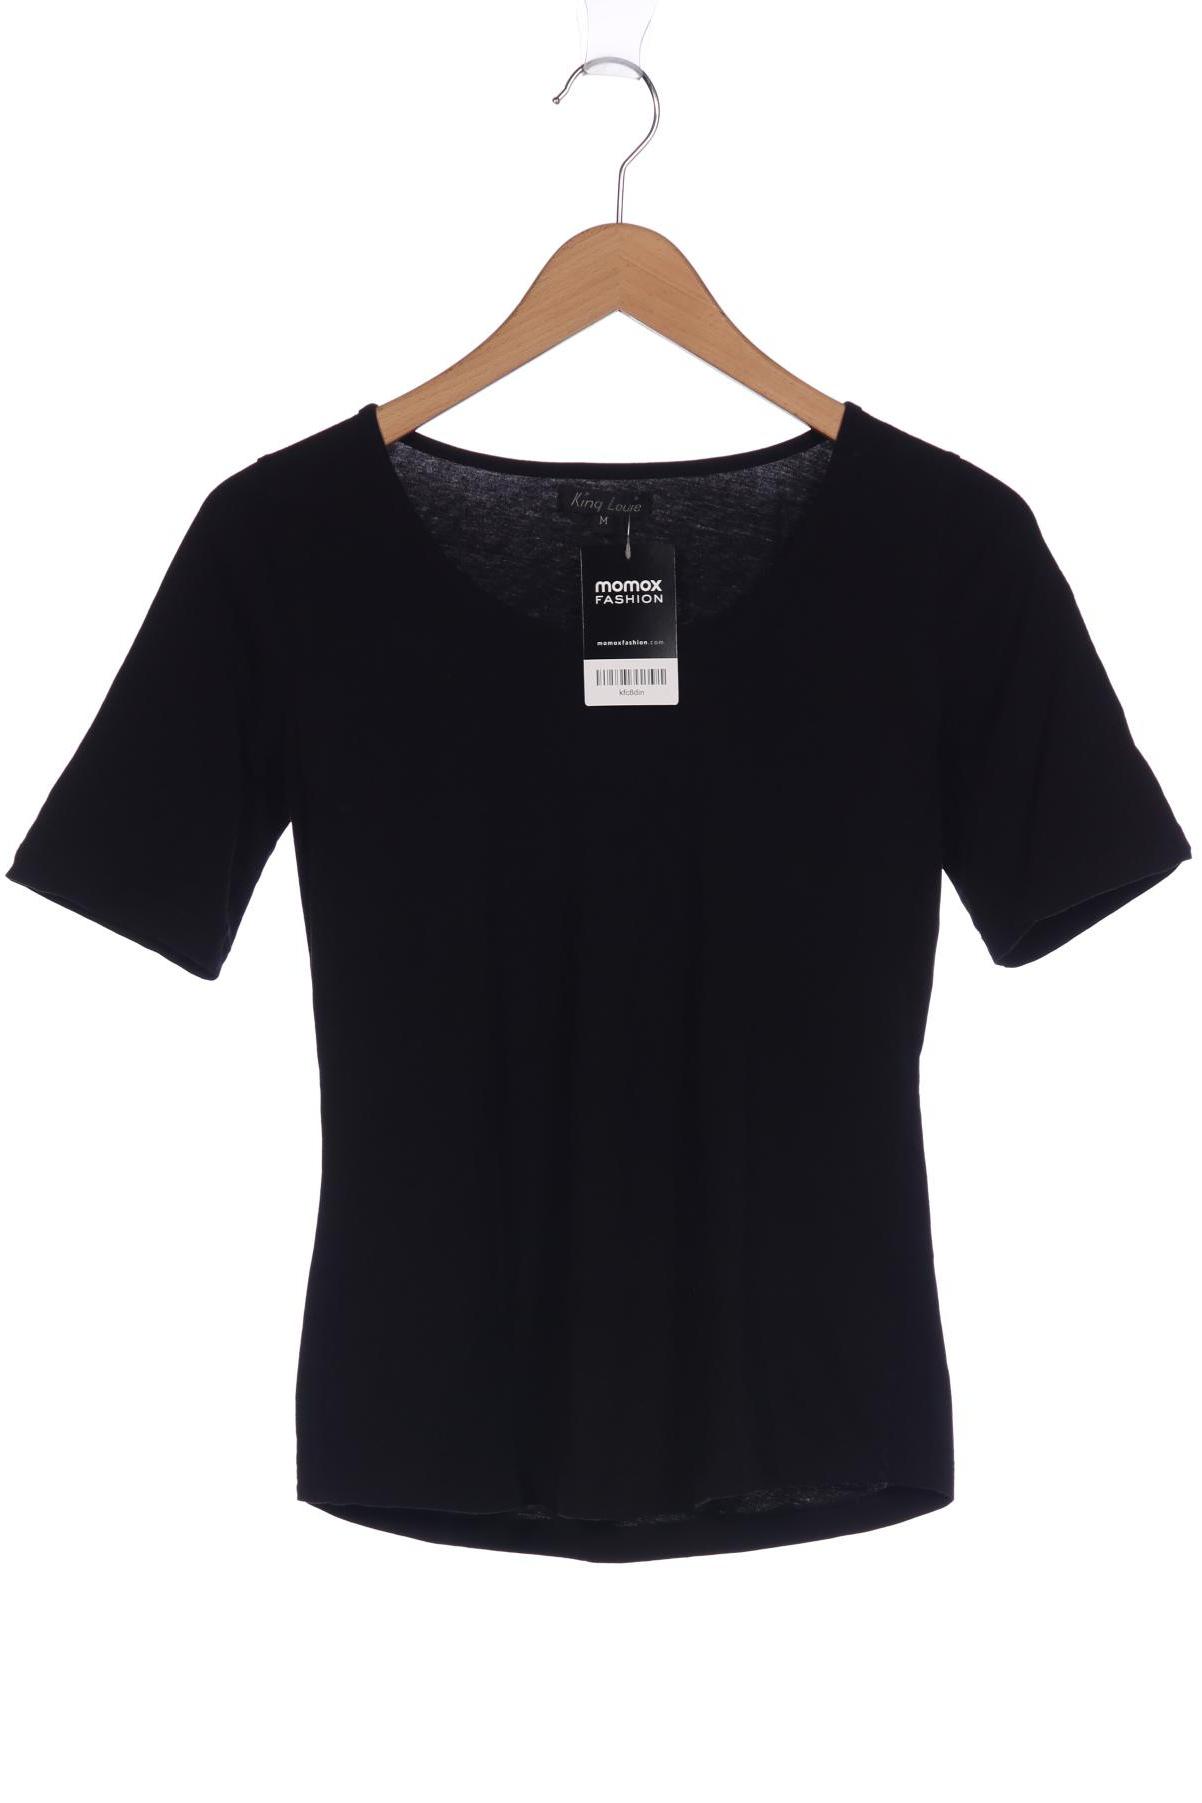 King Louie Damen T-Shirt, schwarz, Gr. 38 von king louie